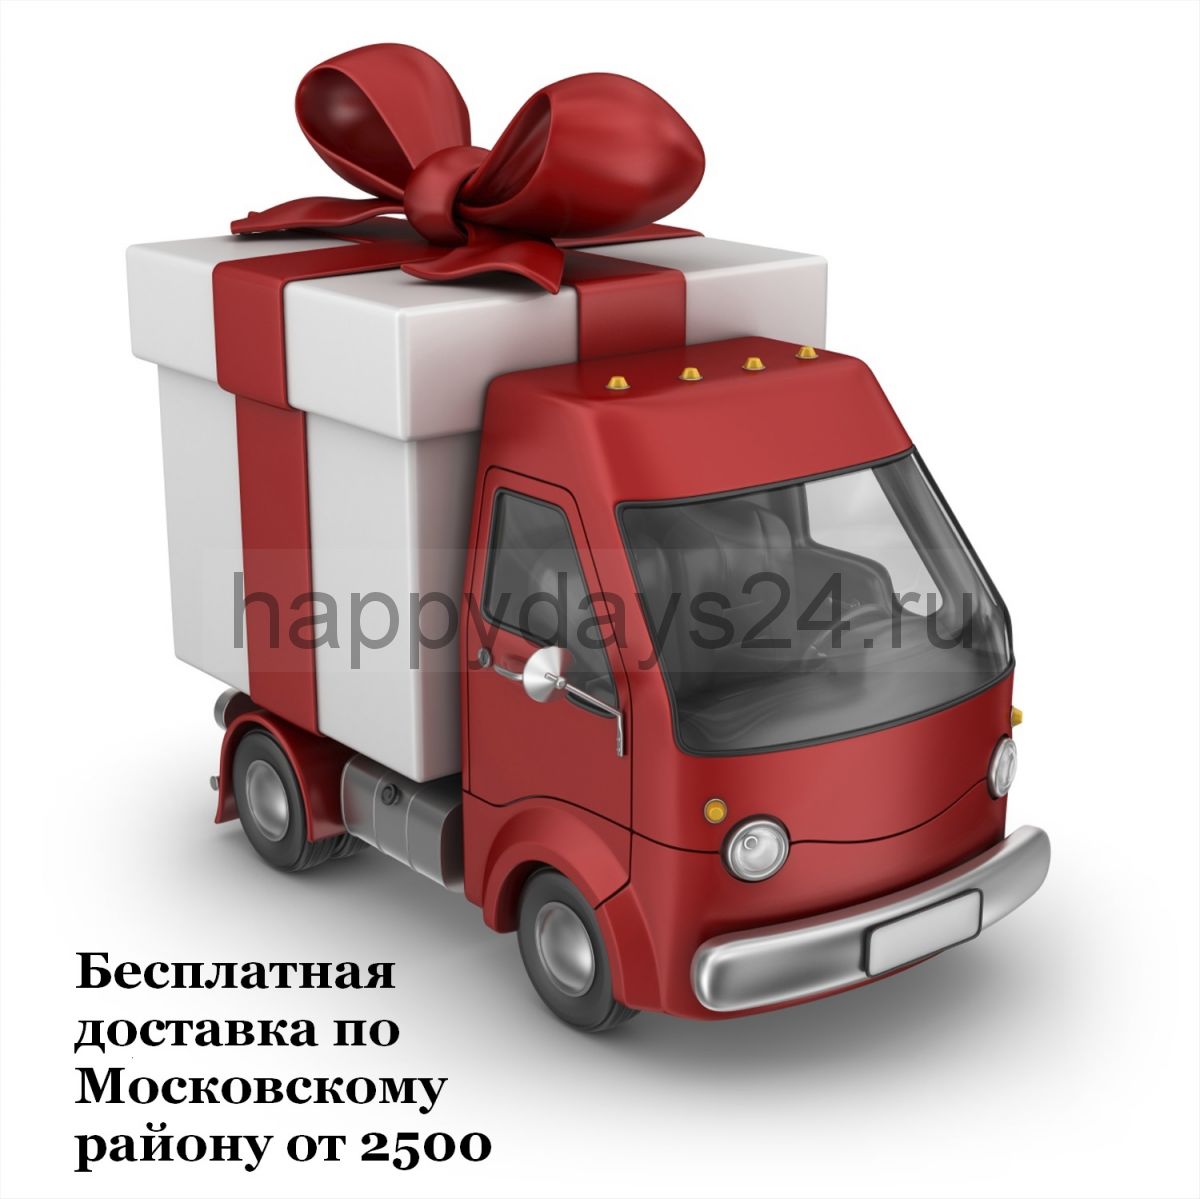 Бесплатная доставка по Московскому району